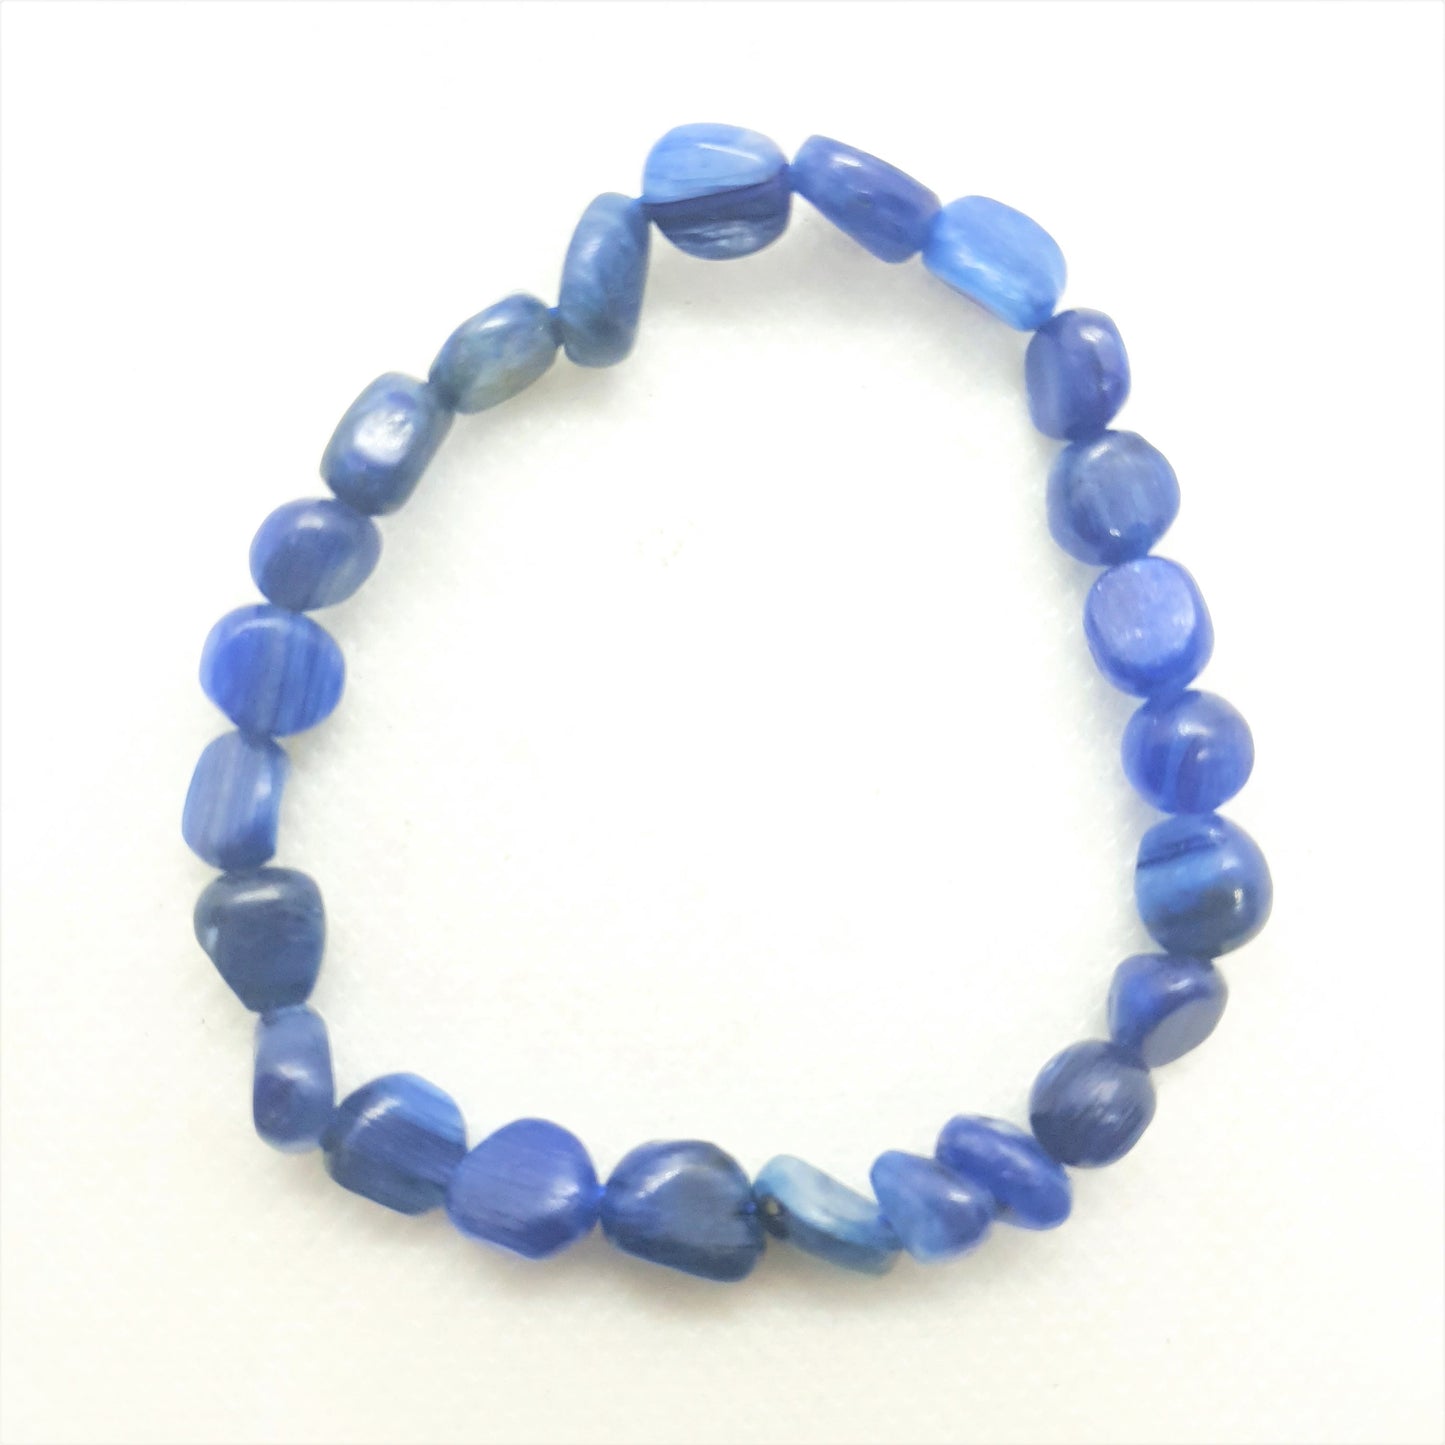 Blue Kyanite Nugget Bracelet